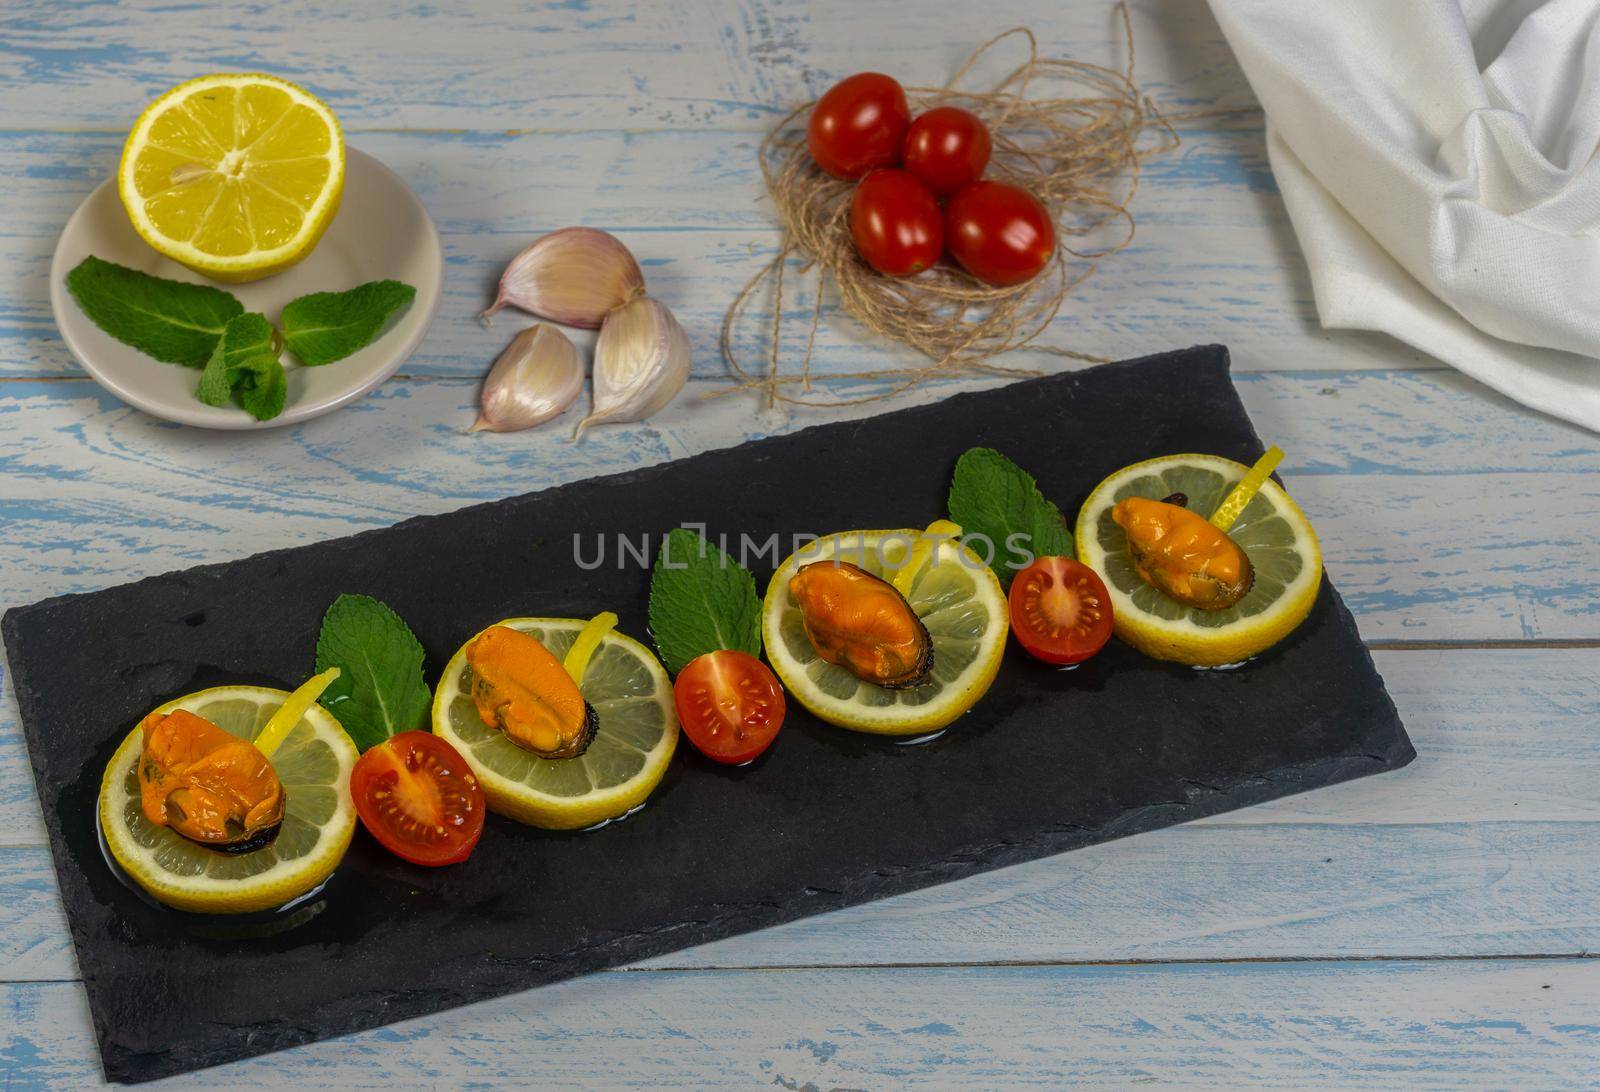 mussels with lemon by joseantona